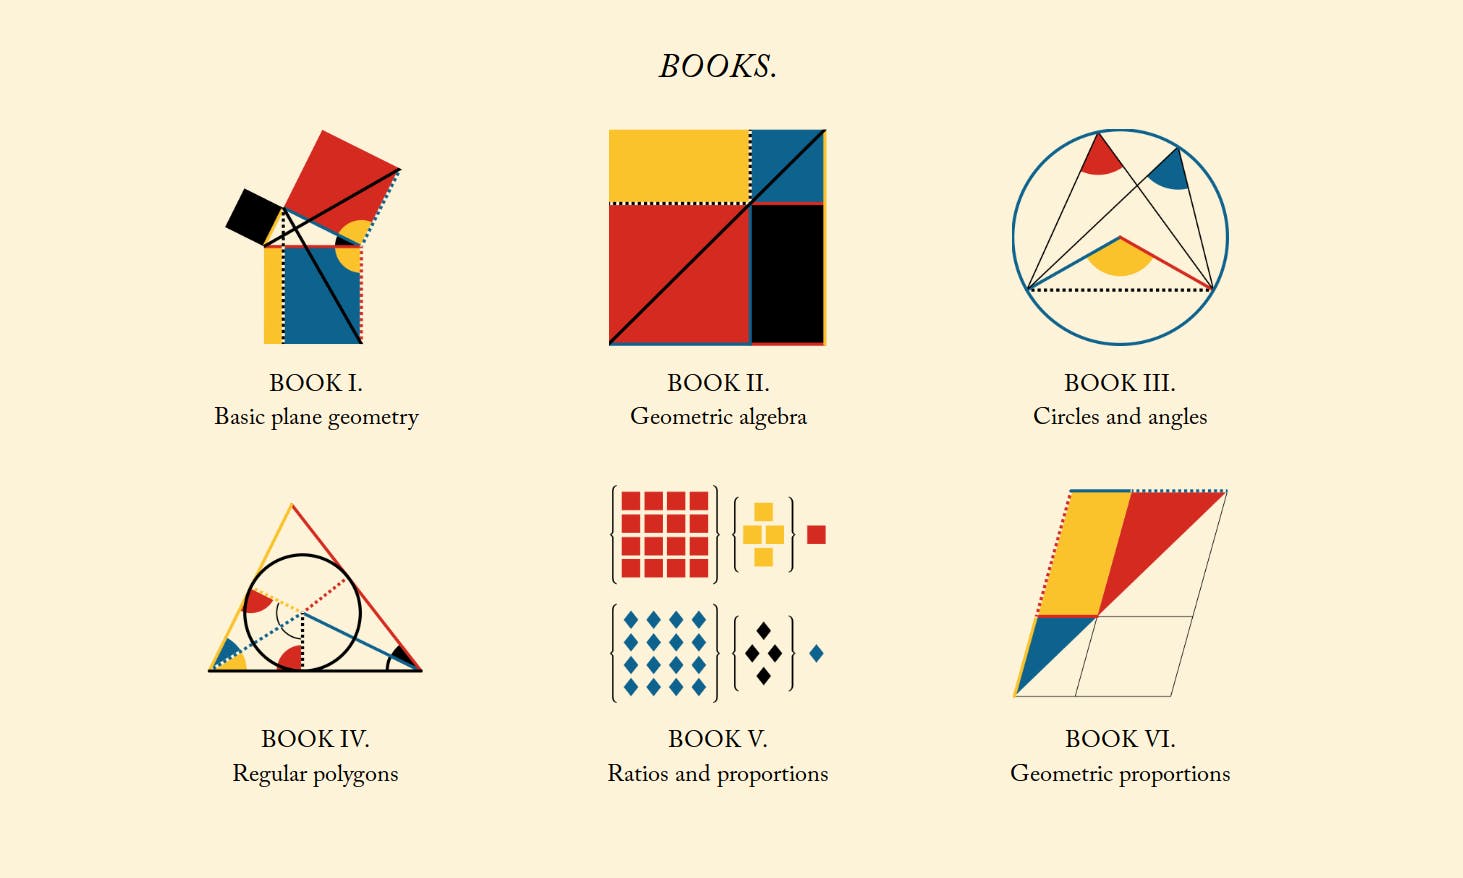 設計師數碼化19世紀最美版《幾何原本》，結合圖像呈現數學證明